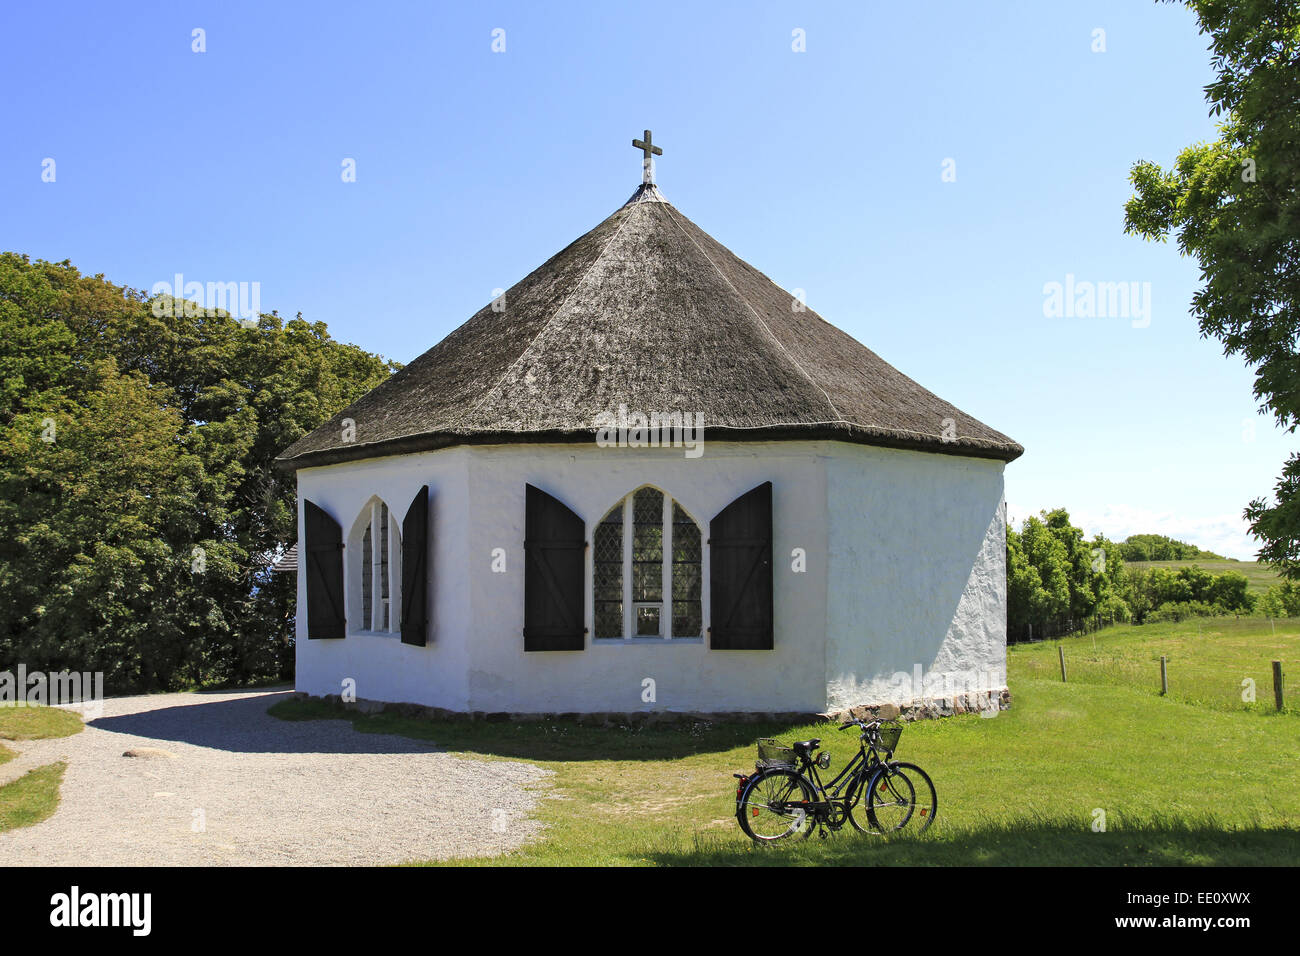 Dorf Vitt, Vitter Kapelle, Kap Arkona, Insel Ruegen, Mecklenburg-Vorpommern, Deutschland Stock Photo